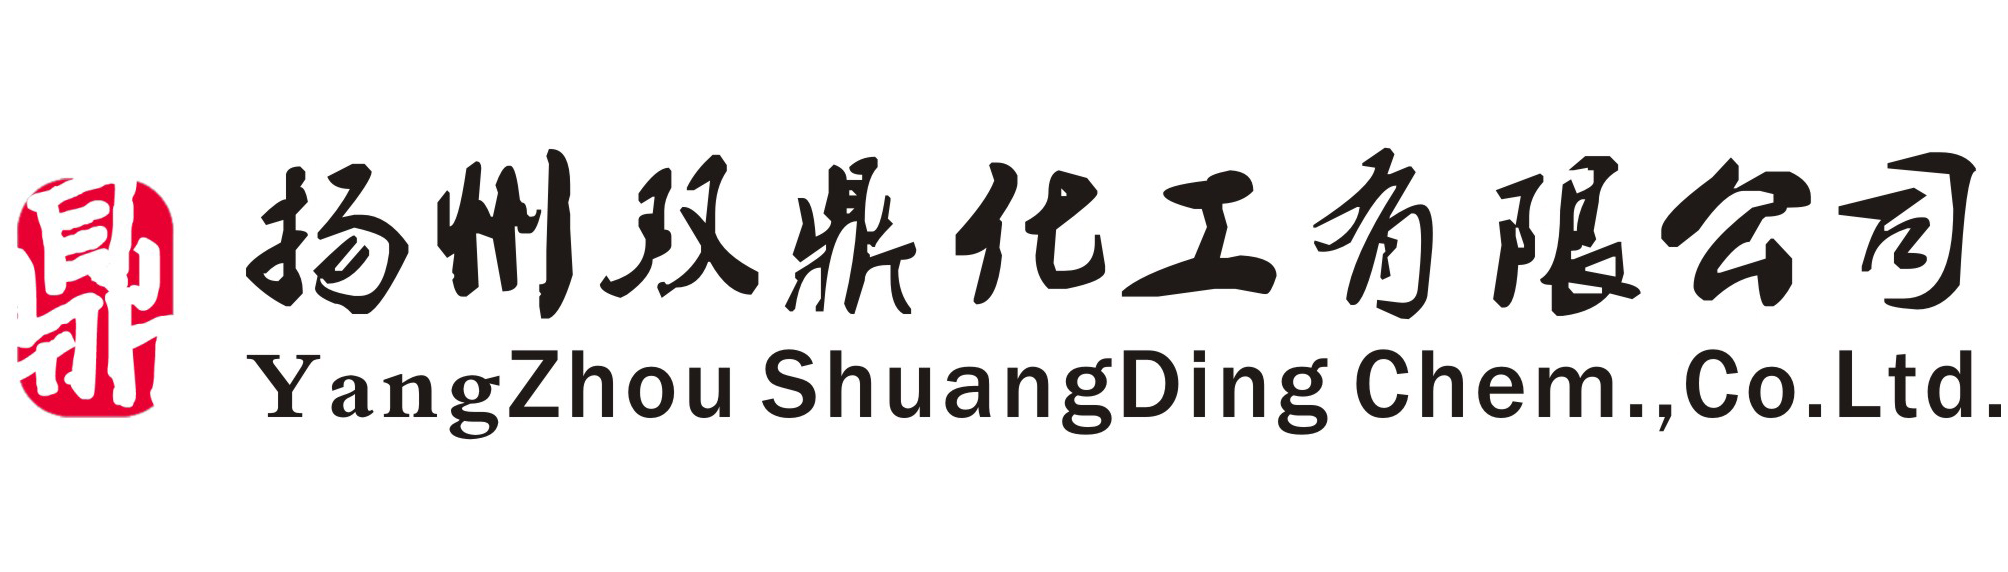 扬州双鼎化工有限公司logo